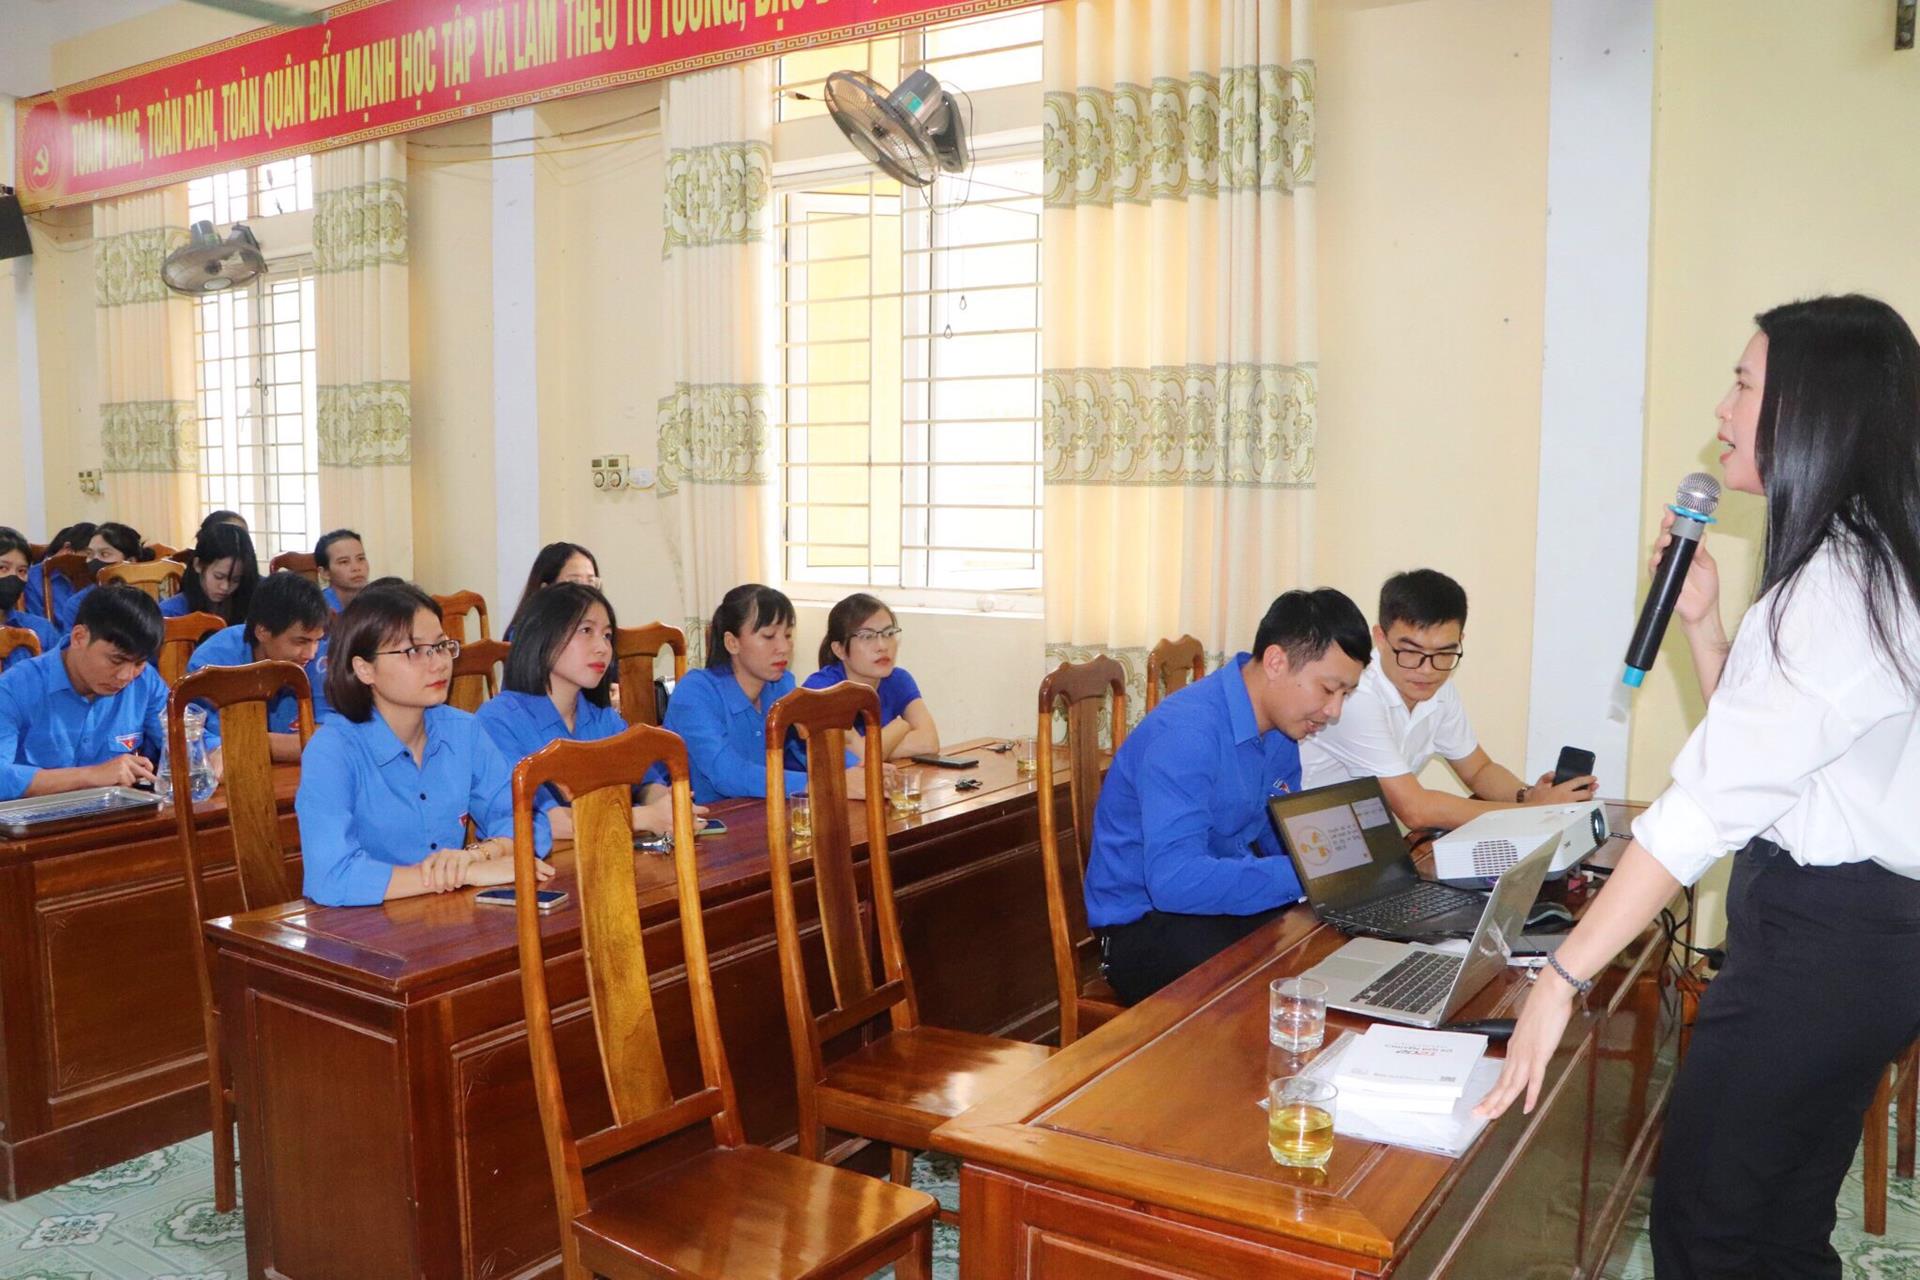 Huyện đoàn Vũ Quang tập huấn nâng cao năng lực chuyển đổi số